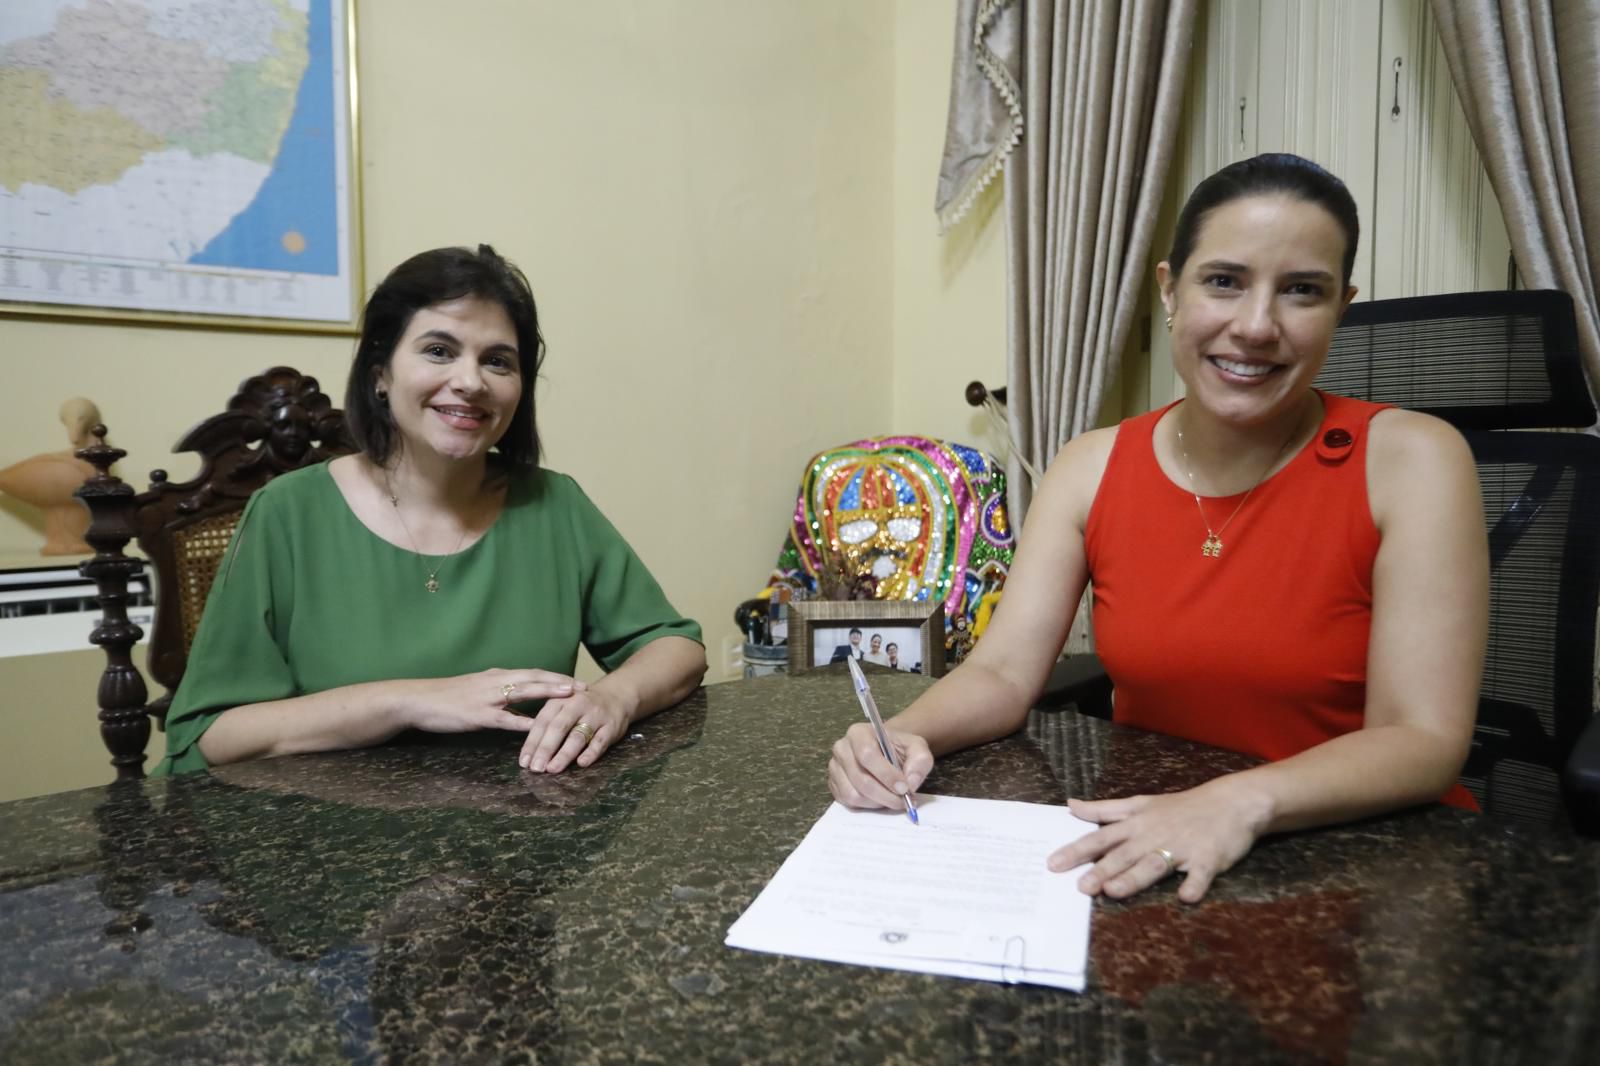  Governo de Pernambuco desapropria terrenos para construção de maternidade e hospital em Serra Talhada e Garanhuns